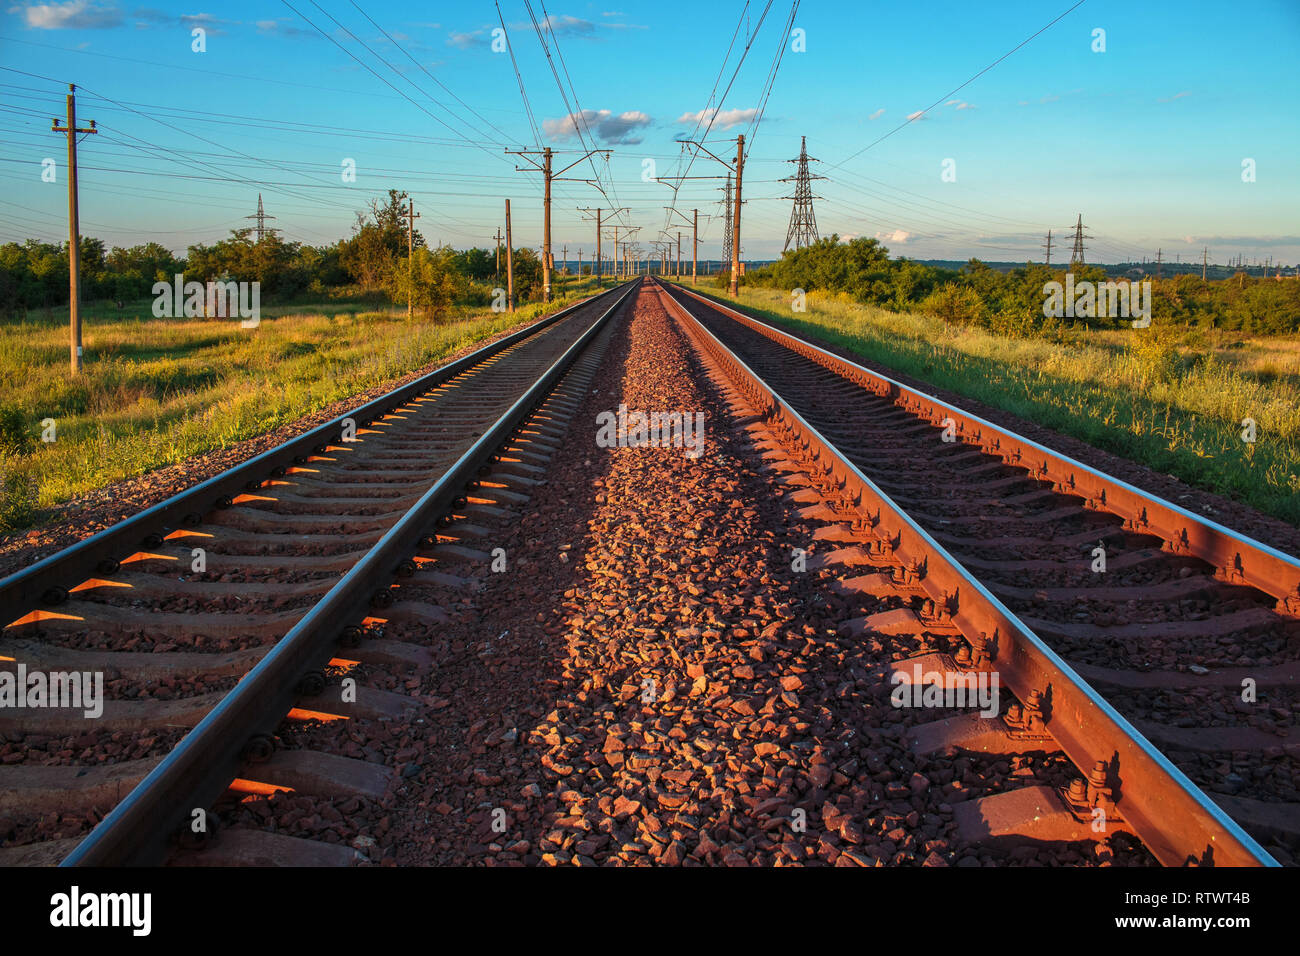 Eine doppelte endlose Eisenbahn. Unendliche Eisenbahn führenden unendlich ist. Ein Sonnenuntergang Landschaft. Kriviy Rih, Ukraine. Sommer Eisenbahn Landschaft Stockfoto